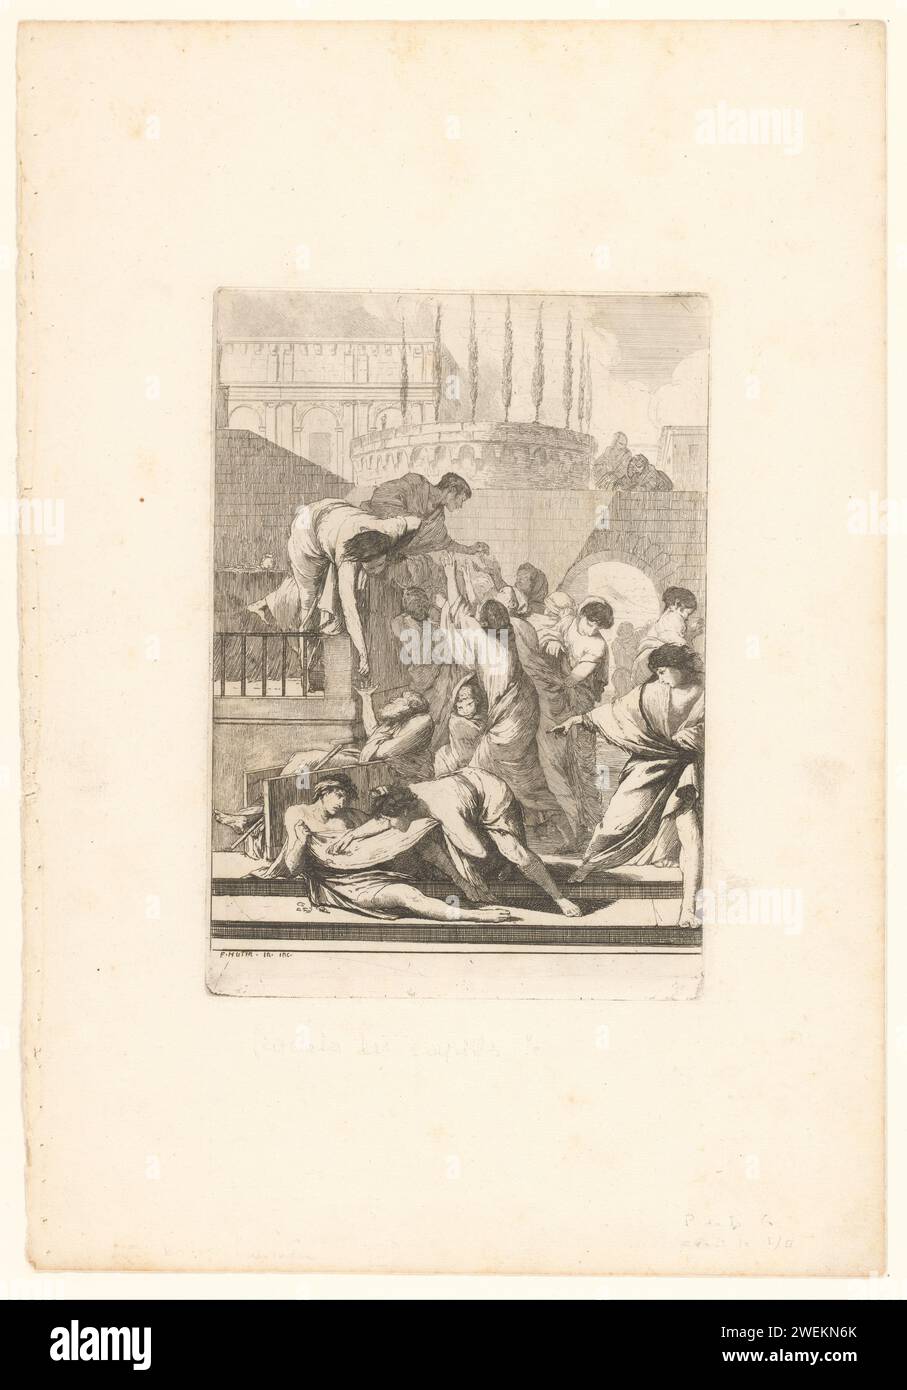 La maison des étrangers, François Hutin, c. 1730 - c. 1750 imprimer partie d'une série de sept œuvres de miséricorde avec des performances dans un cadre antique. Gravure de papier abritant des étrangers, 'hospes colligitur'  l'un des (sept) actes de Miséricorde Banque D'Images